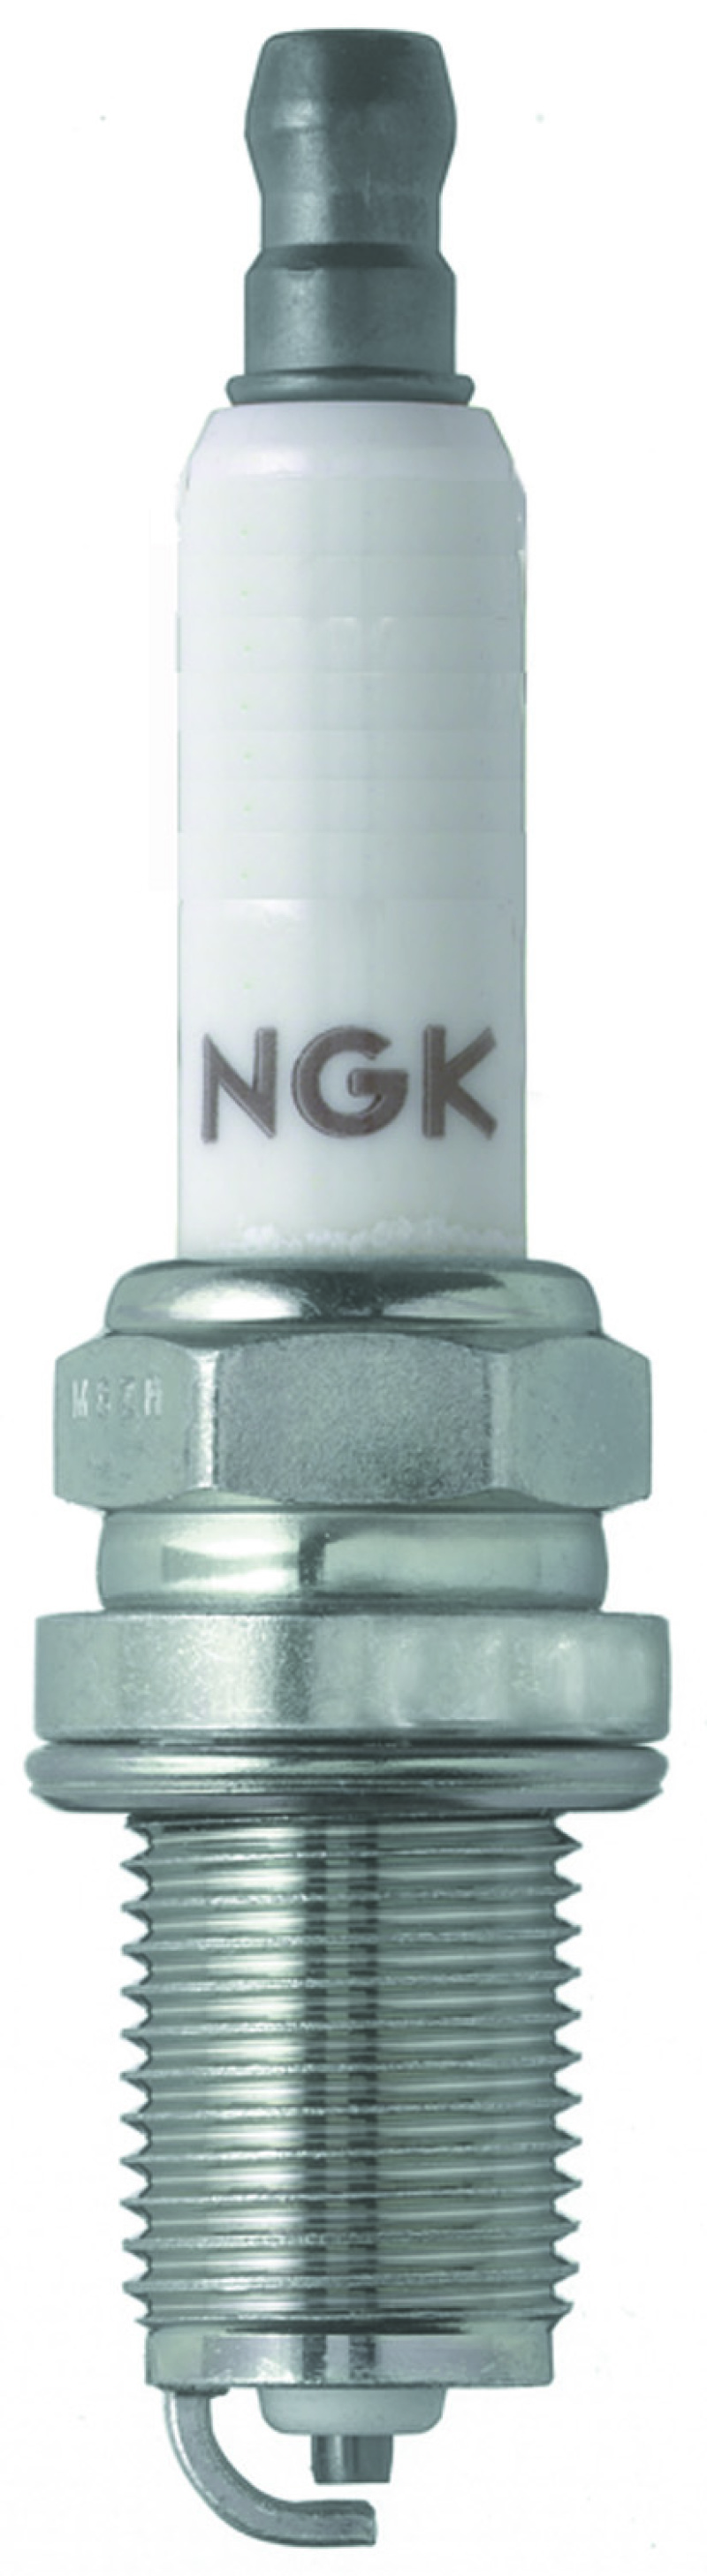 NGK Standard Spark Plug Box of 4 (BKR5ESA-11) - 5643